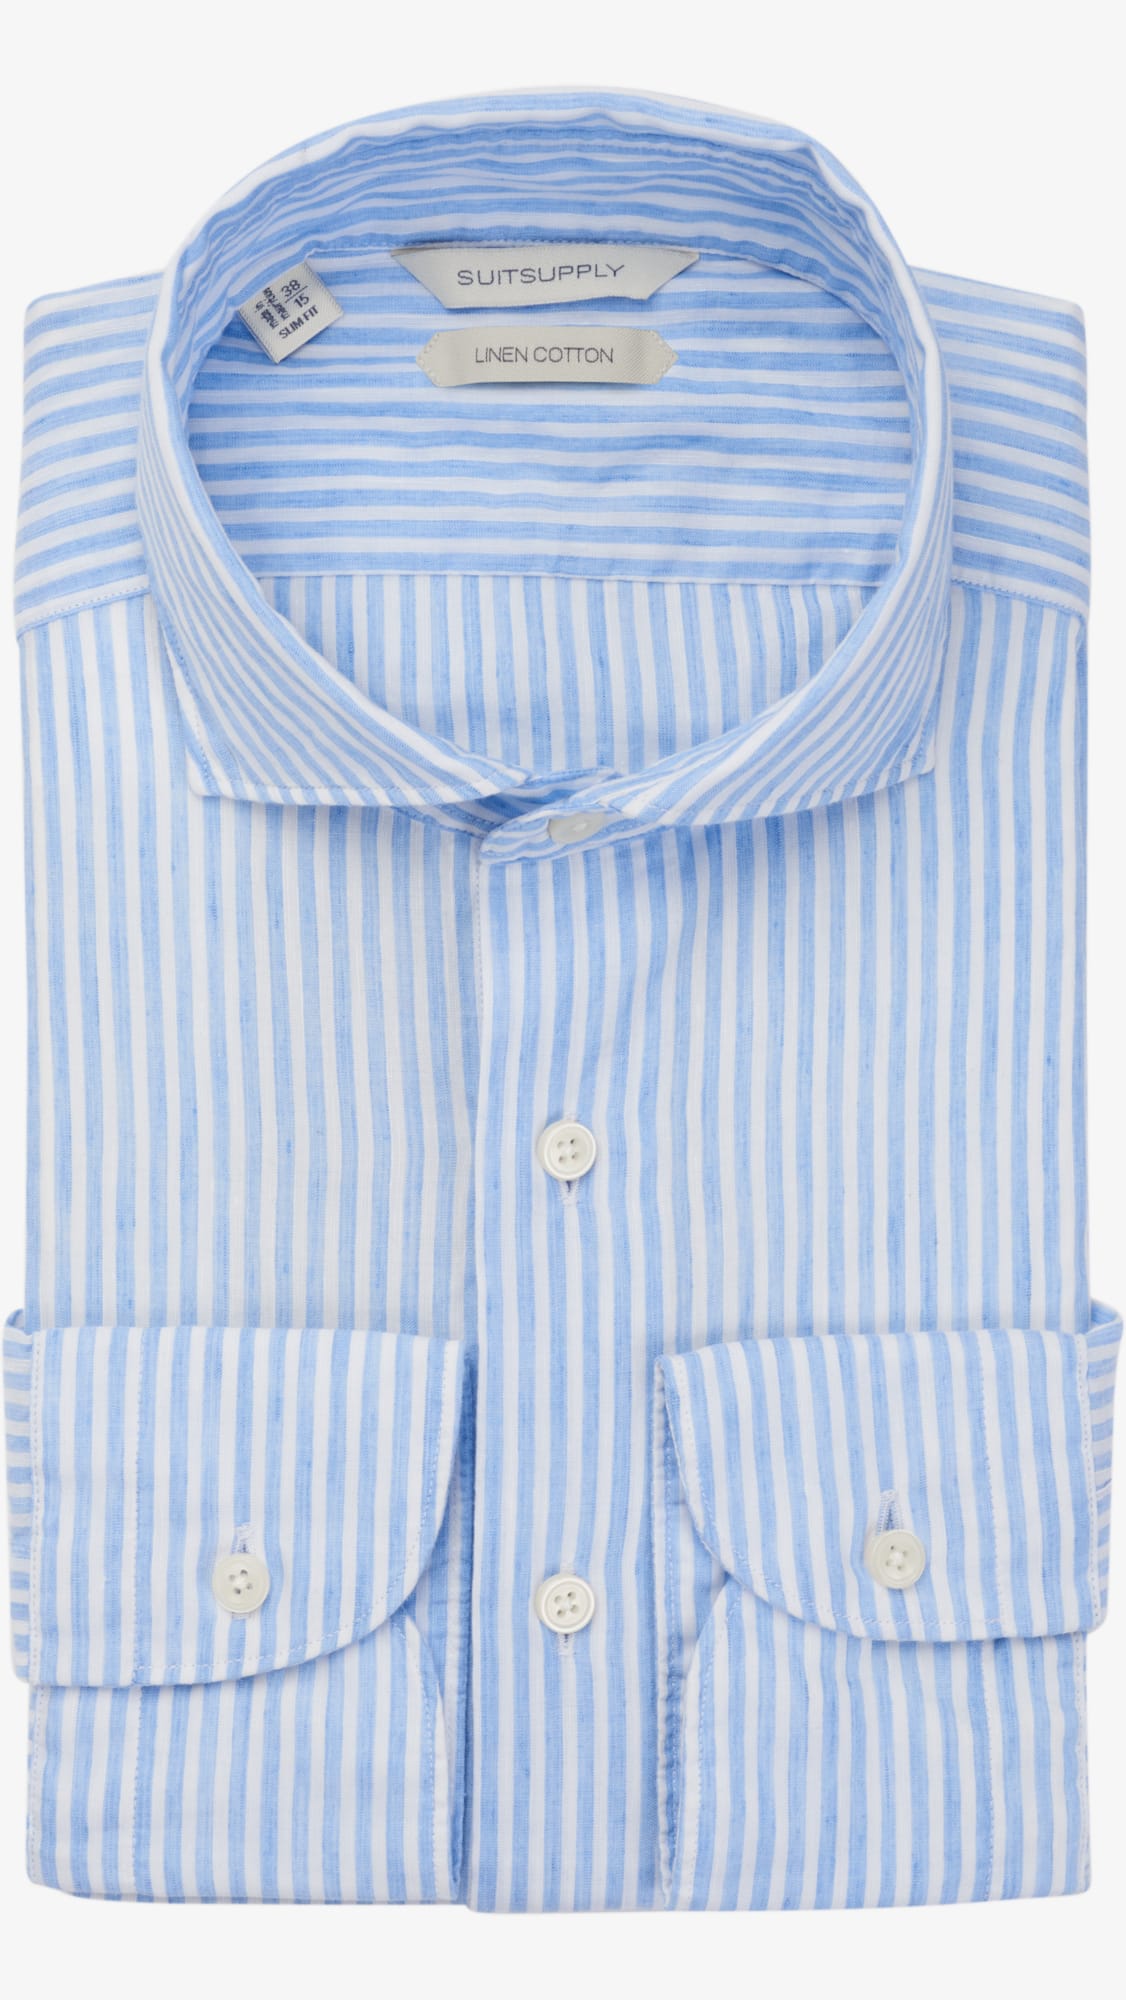 Suitsupply cotton-linen shirt 1 – Menswear Musings